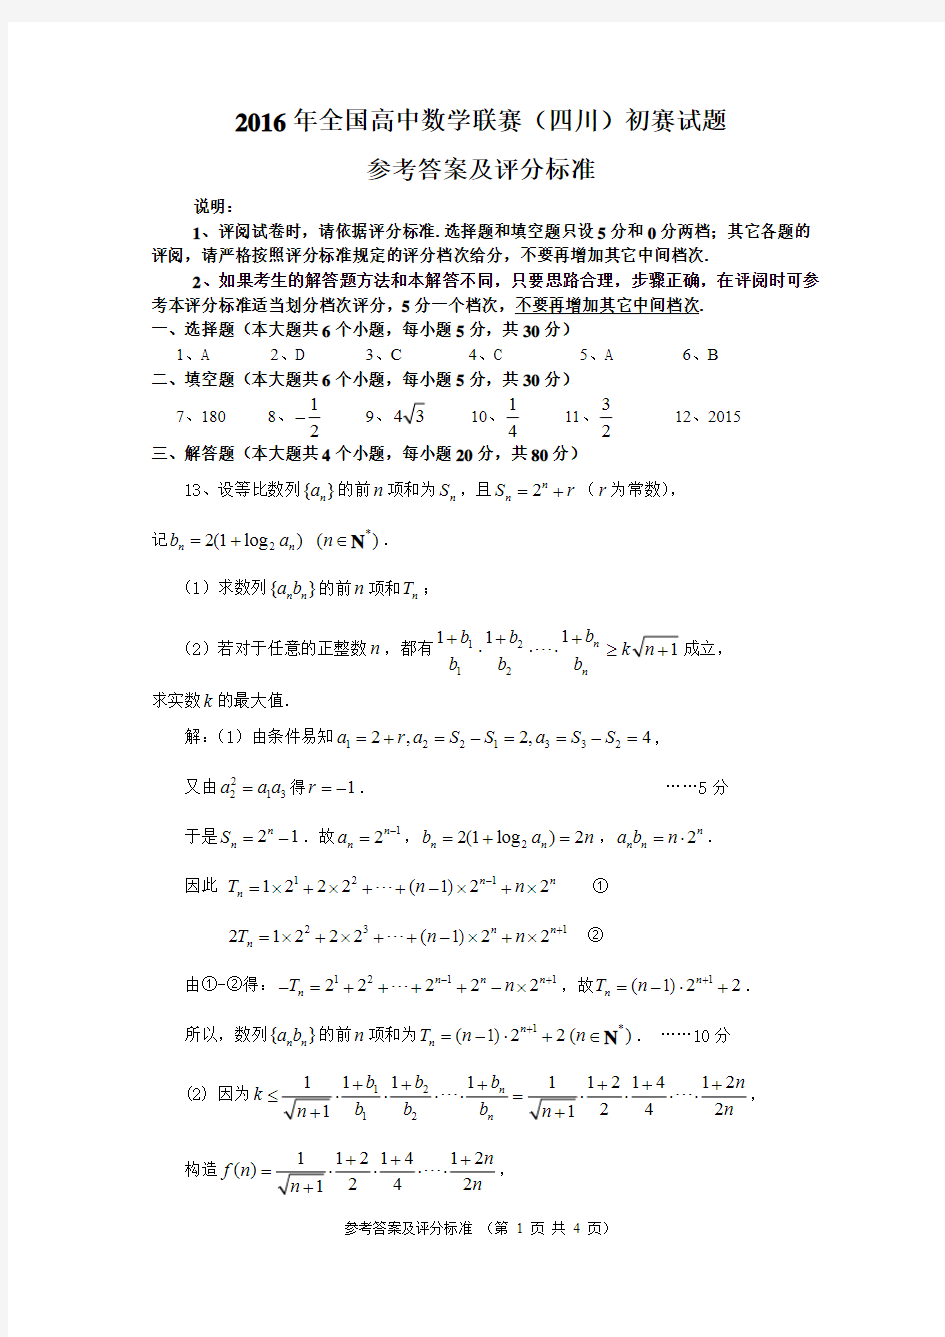 2016年高中数学联赛四川预赛参考答案及评分细则 (1)